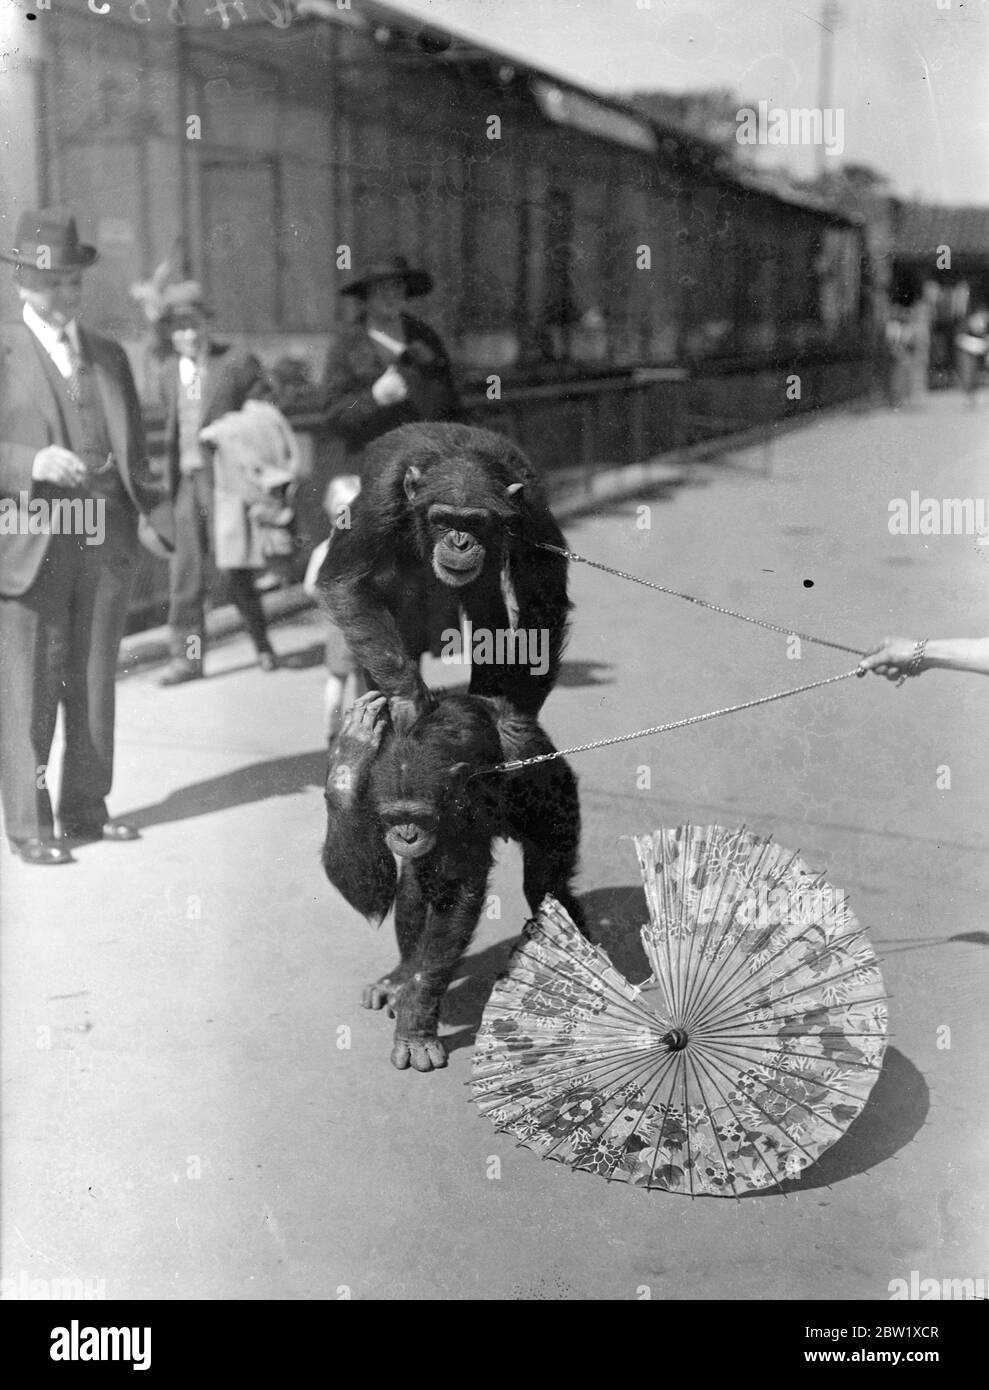 Zoo de chimp décider de la position d'un parasol! Le temps chaud a donné lieu à un argument au zoo de Londres entre Peter et Jackie, les chimpanzés. Jackie a réussi à emprunter un parasol et Peter a insisté pour le partager. En fin de compte, c'est le parasol qui a eu le pire de lui! Photos : le parasol commence à montrer des signes d'usure sous l'assaut de Jackie (à gauche) et de Peter. 25 mai 1937 Banque D'Images